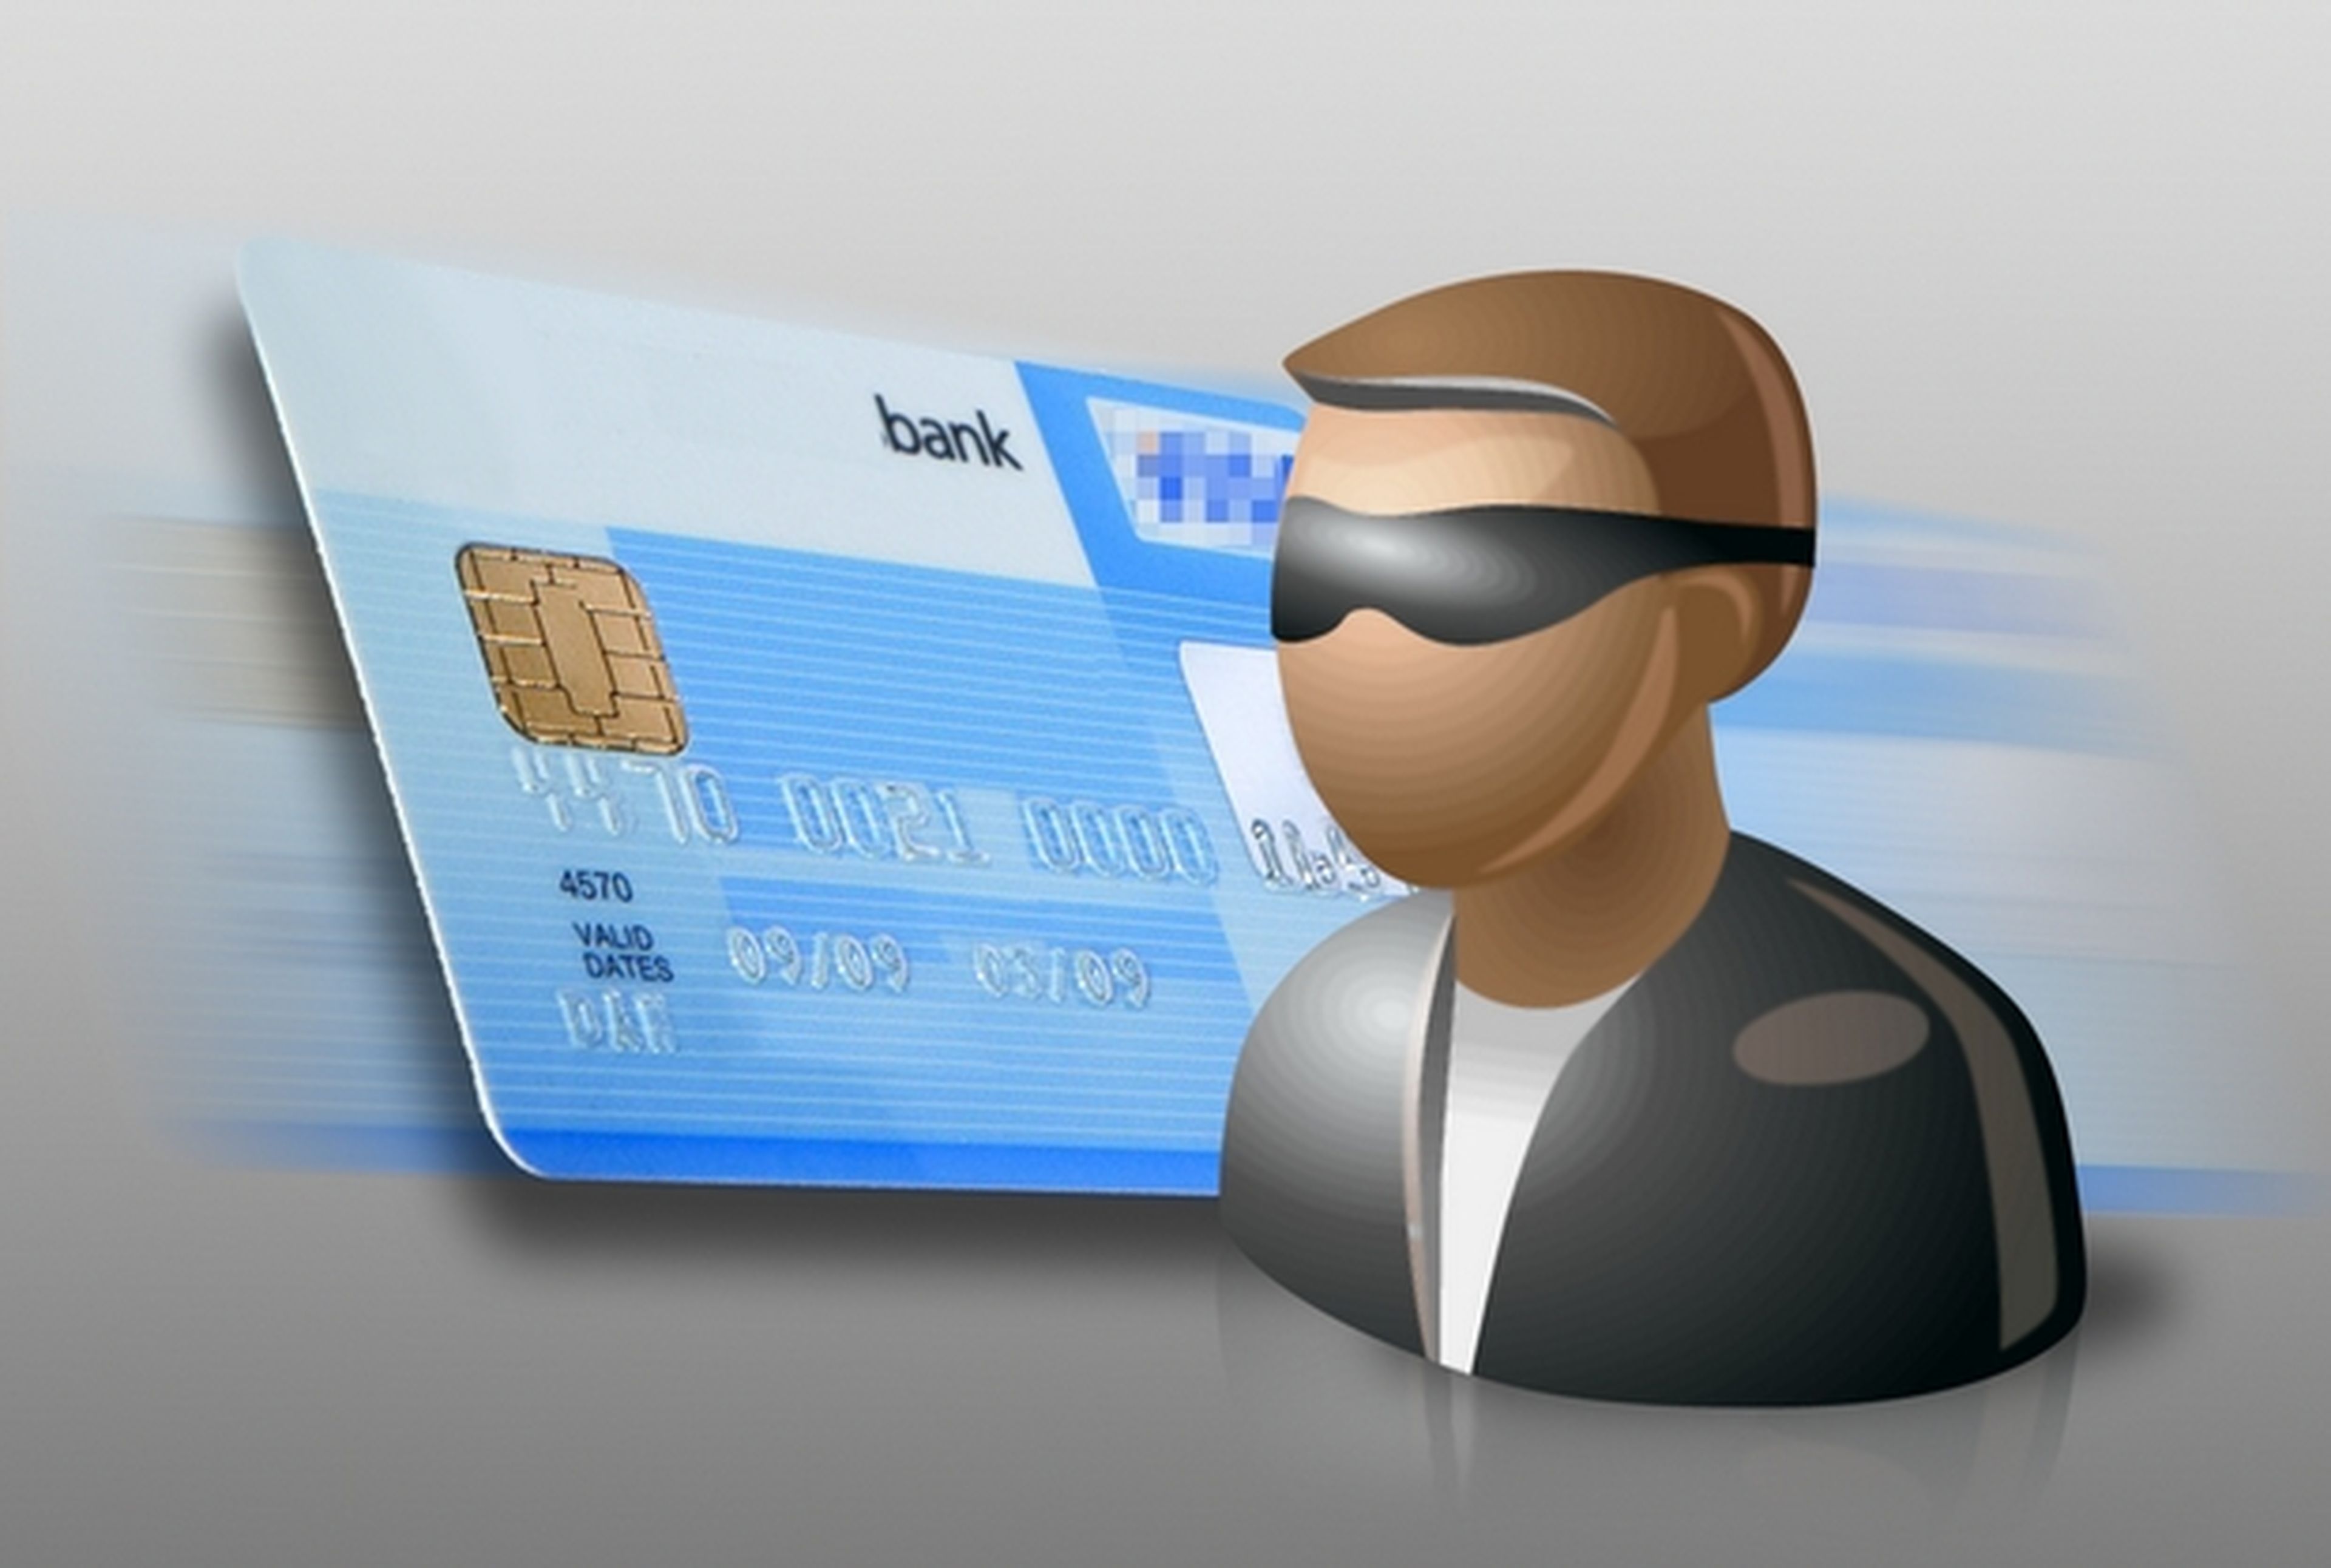 Banca online y compra segura con G Data BankGuard